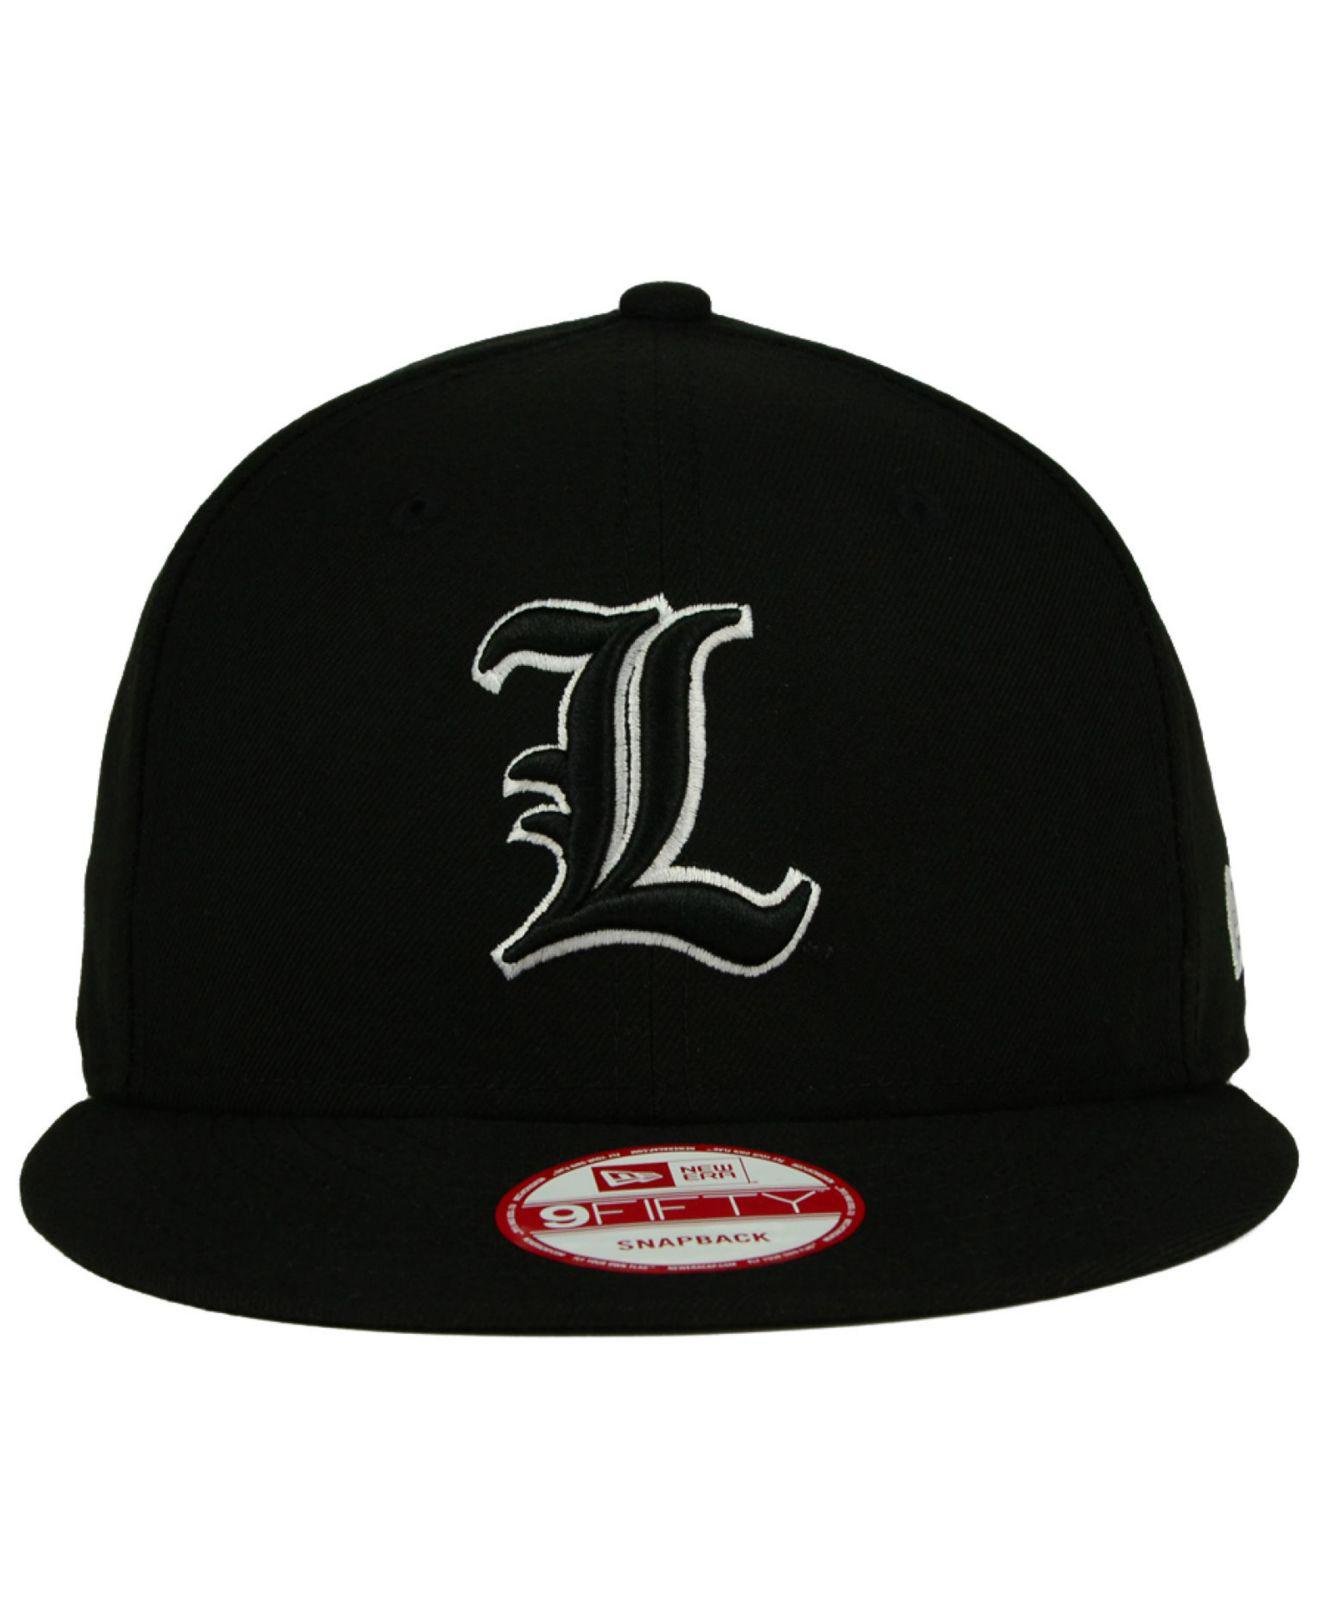 Proline Cap Company Men's Louisville Cardinals Hat/Cap Size 7.5